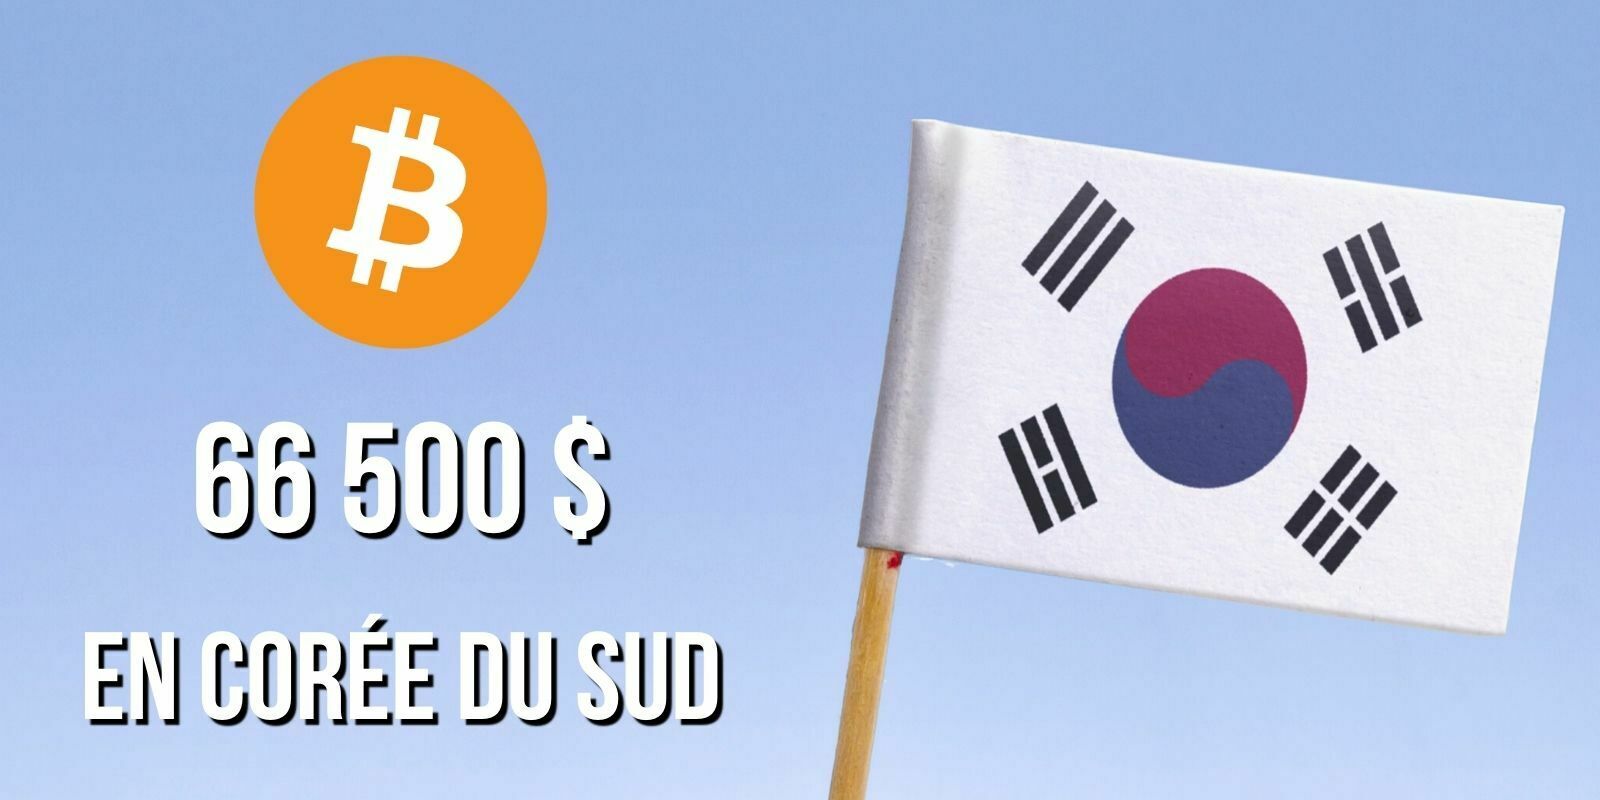 Le Bitcoin (BTC) atteint les 66 500 dollars en Corée du Sud - Le « Kimchi Premium » est de retour